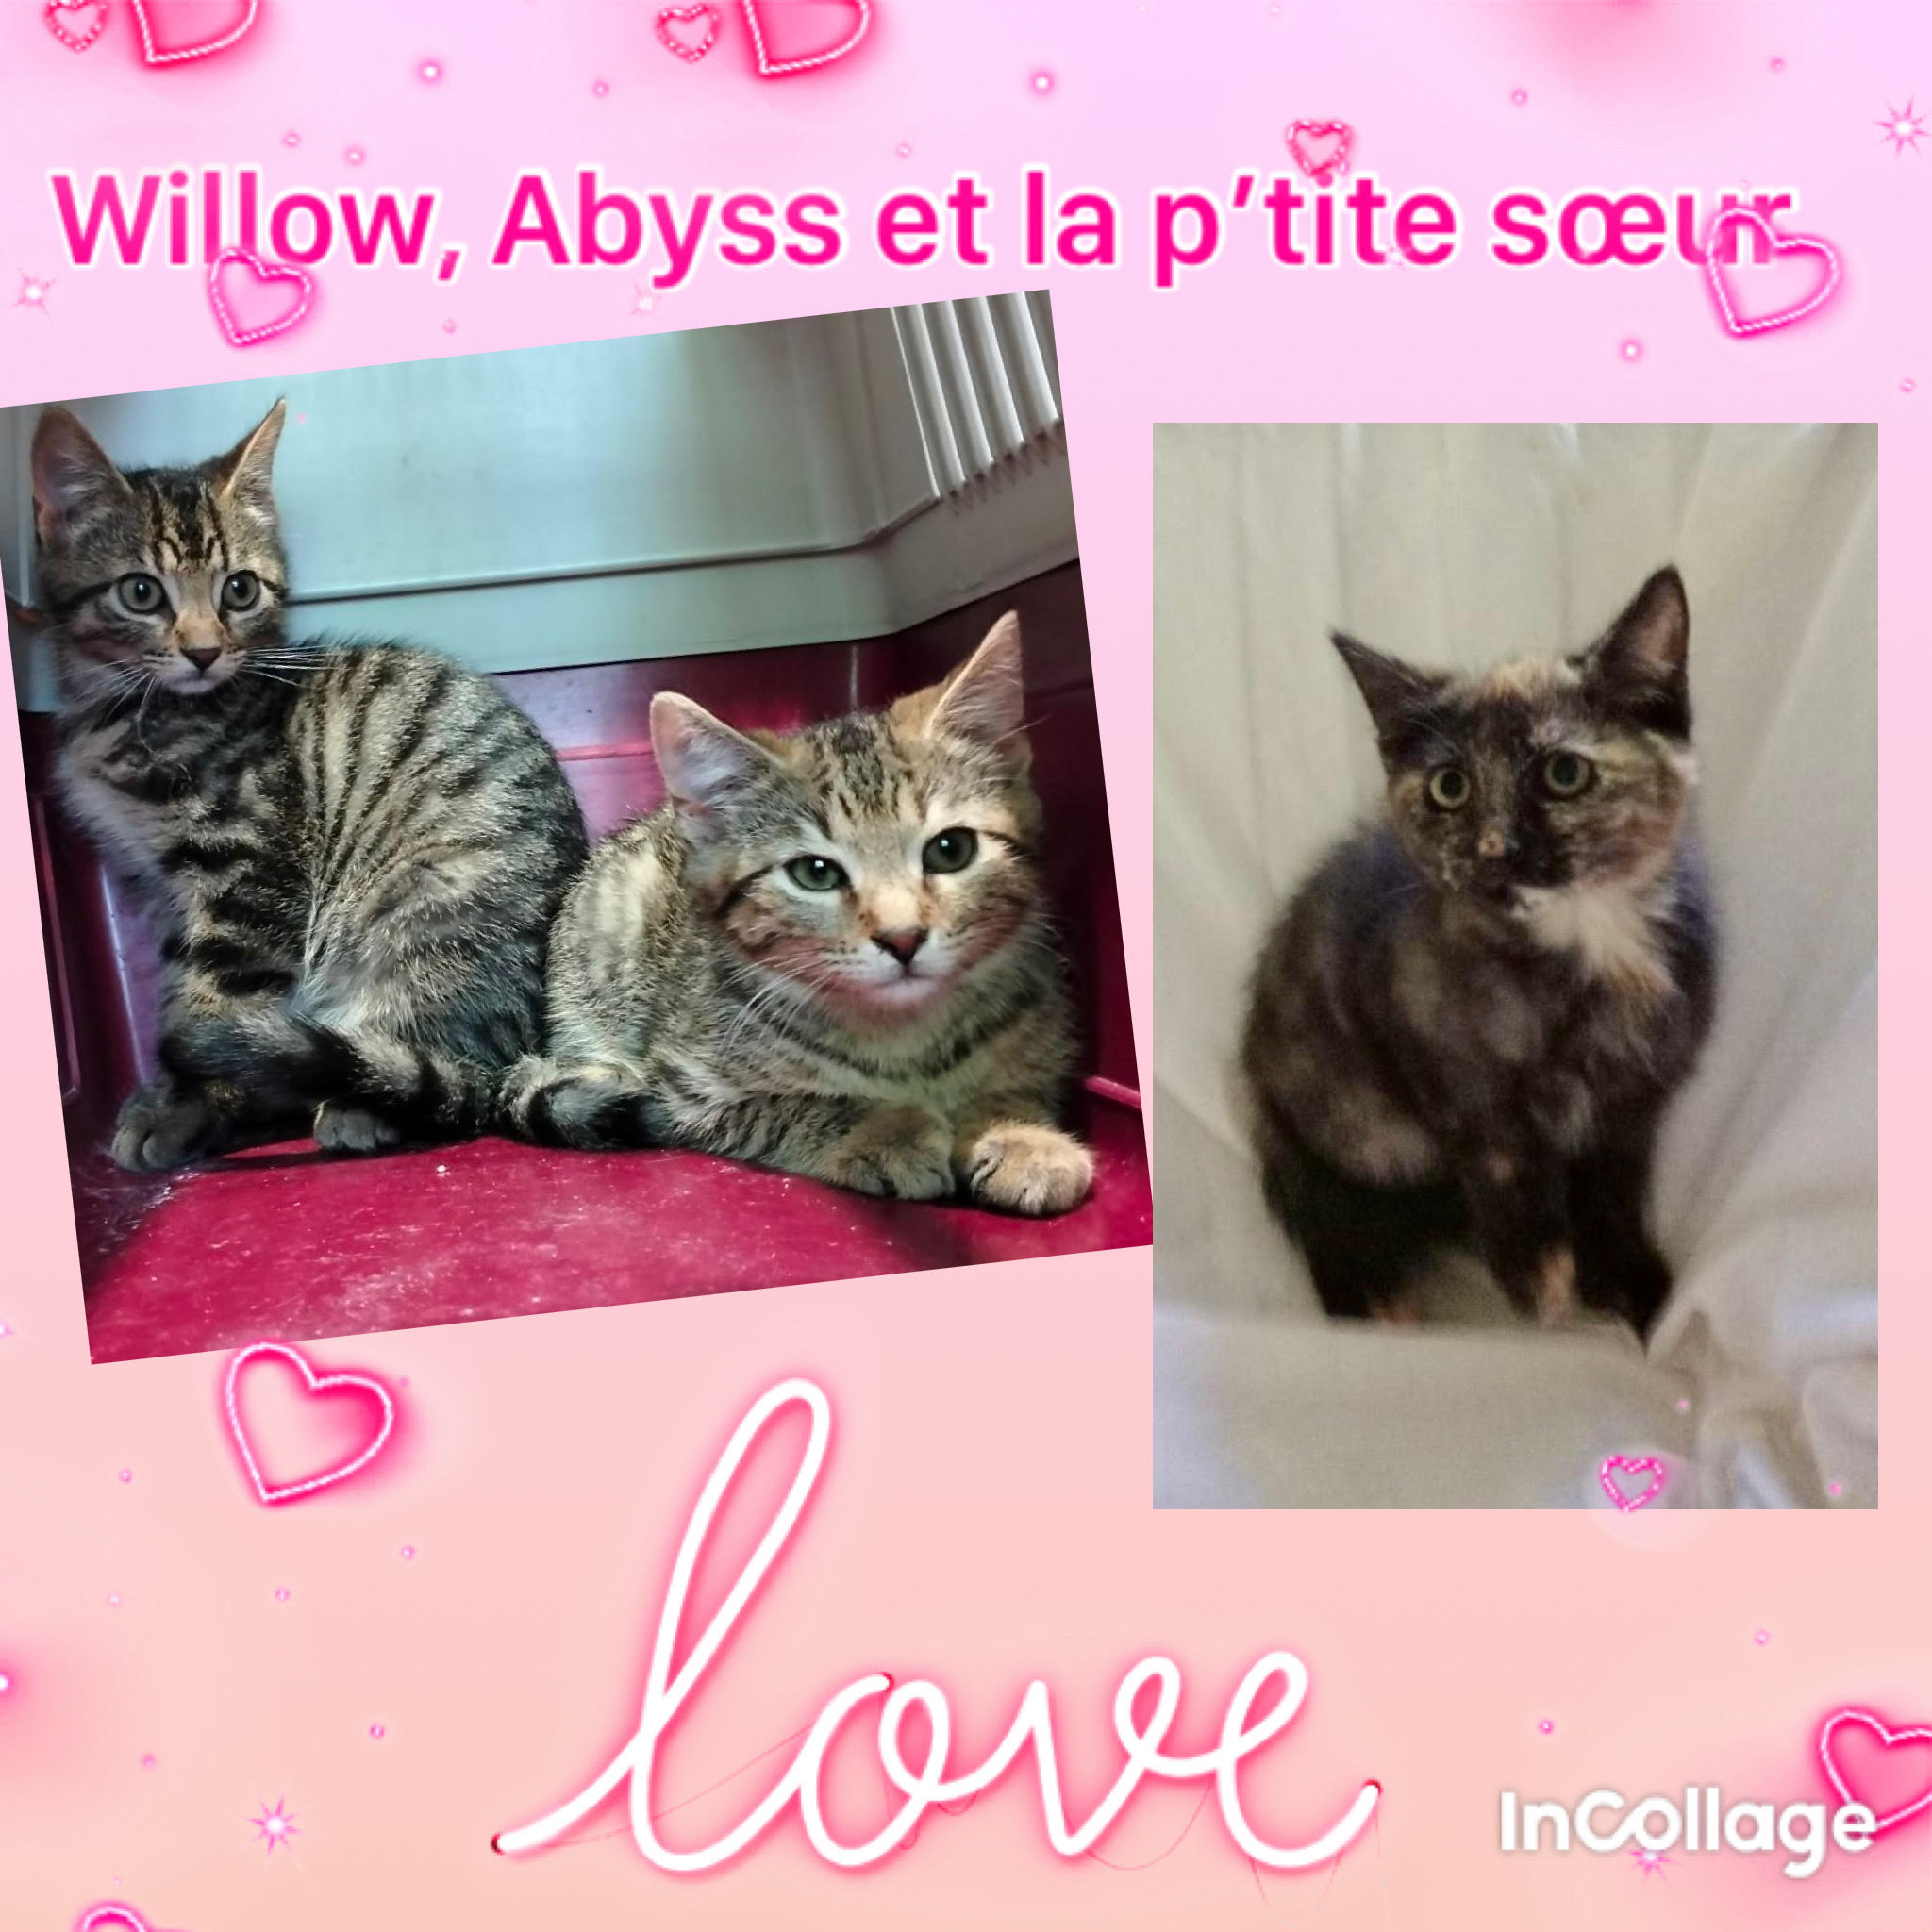 Abyss, Willow et leur petite soeur